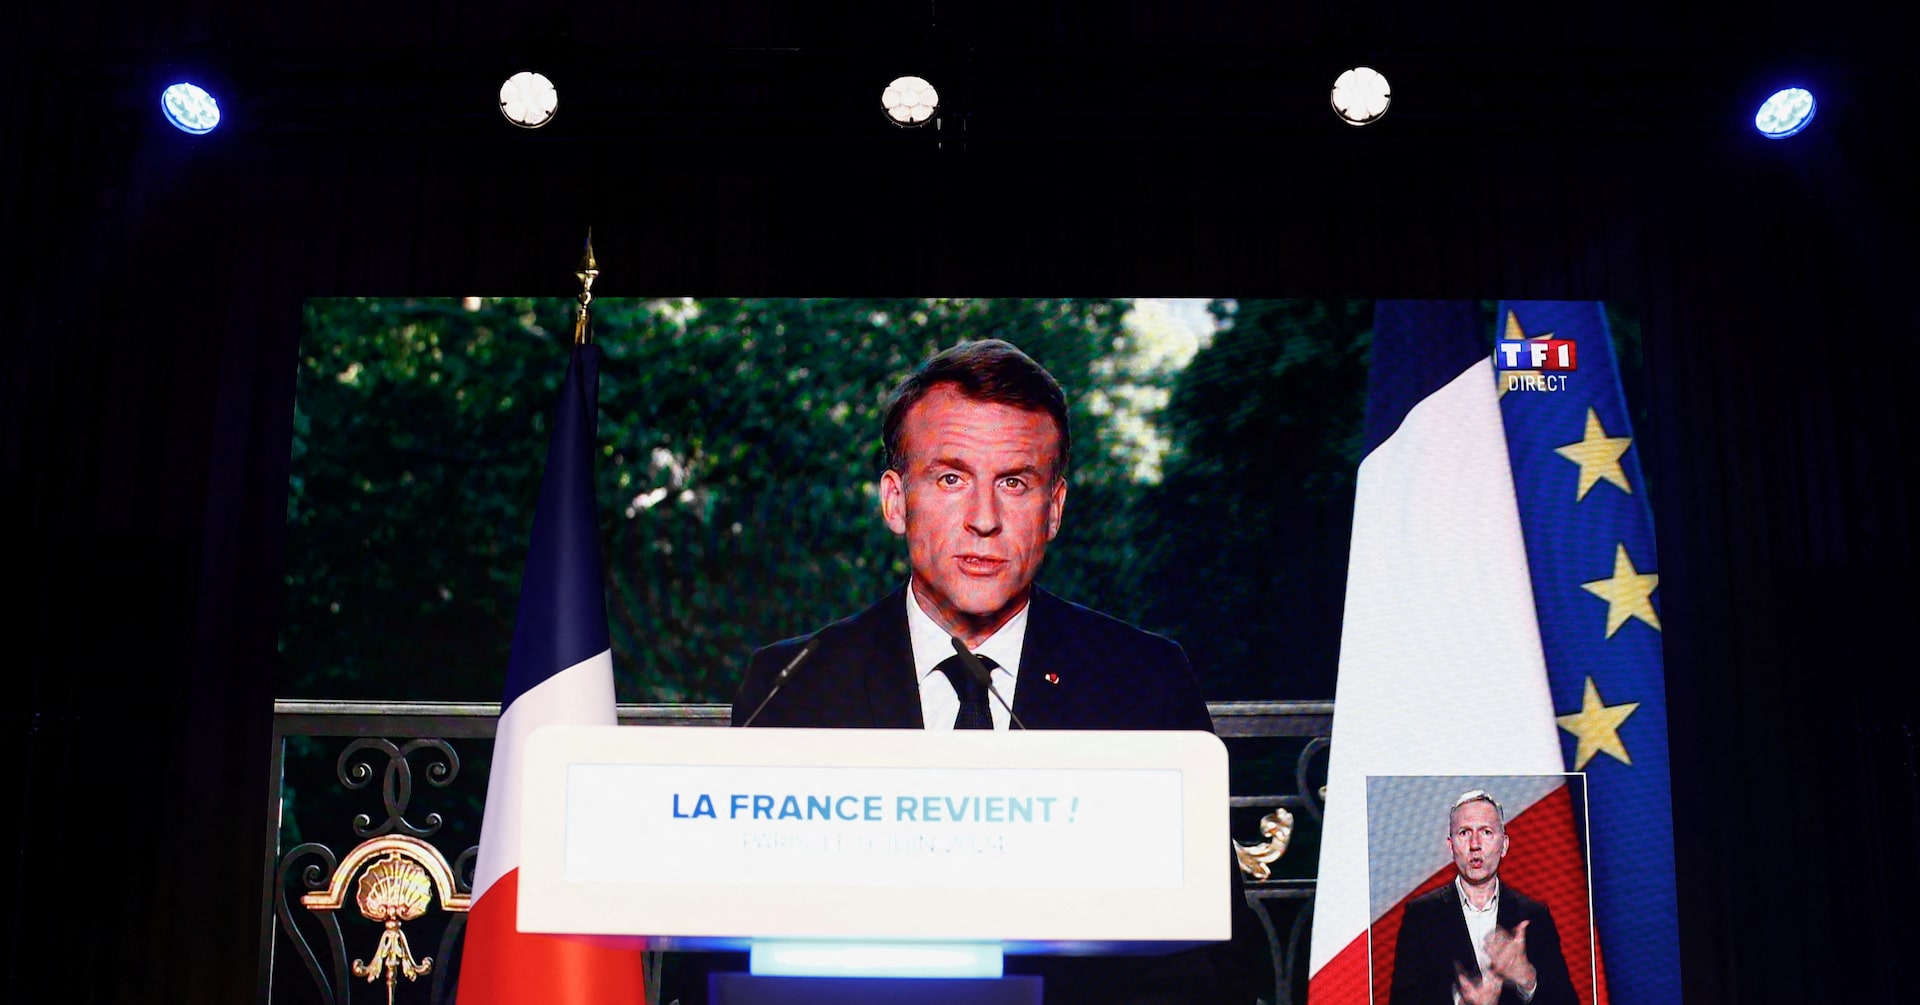 仏大統領、下院解散総選挙を発表 欧州議会選で極右に大敗見通し